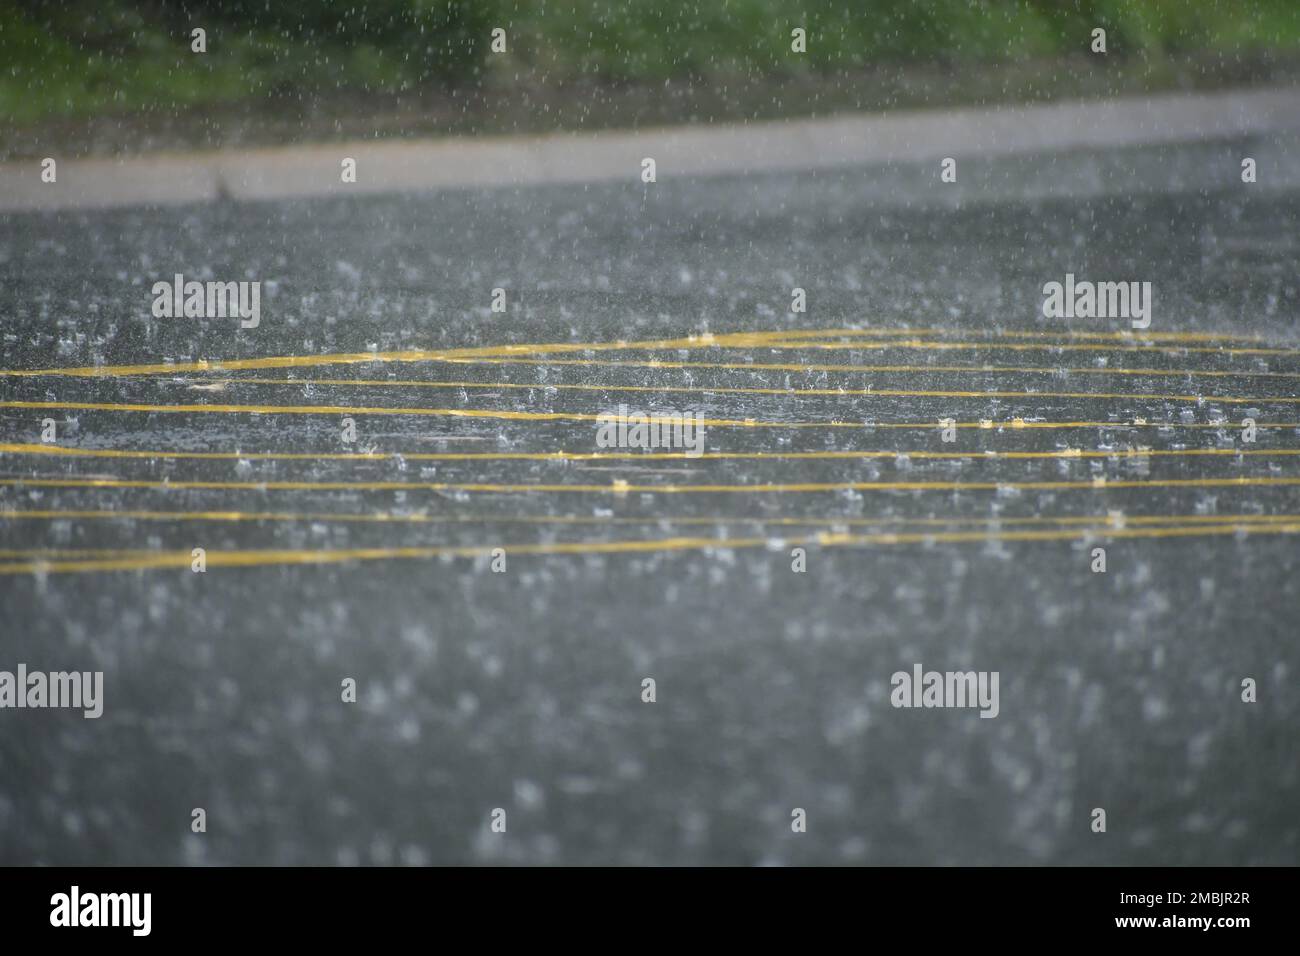 Une multitude de gouttes de pluie tombant sur une route avec des lignes de rendement jaune vif au printemps Banque D'Images